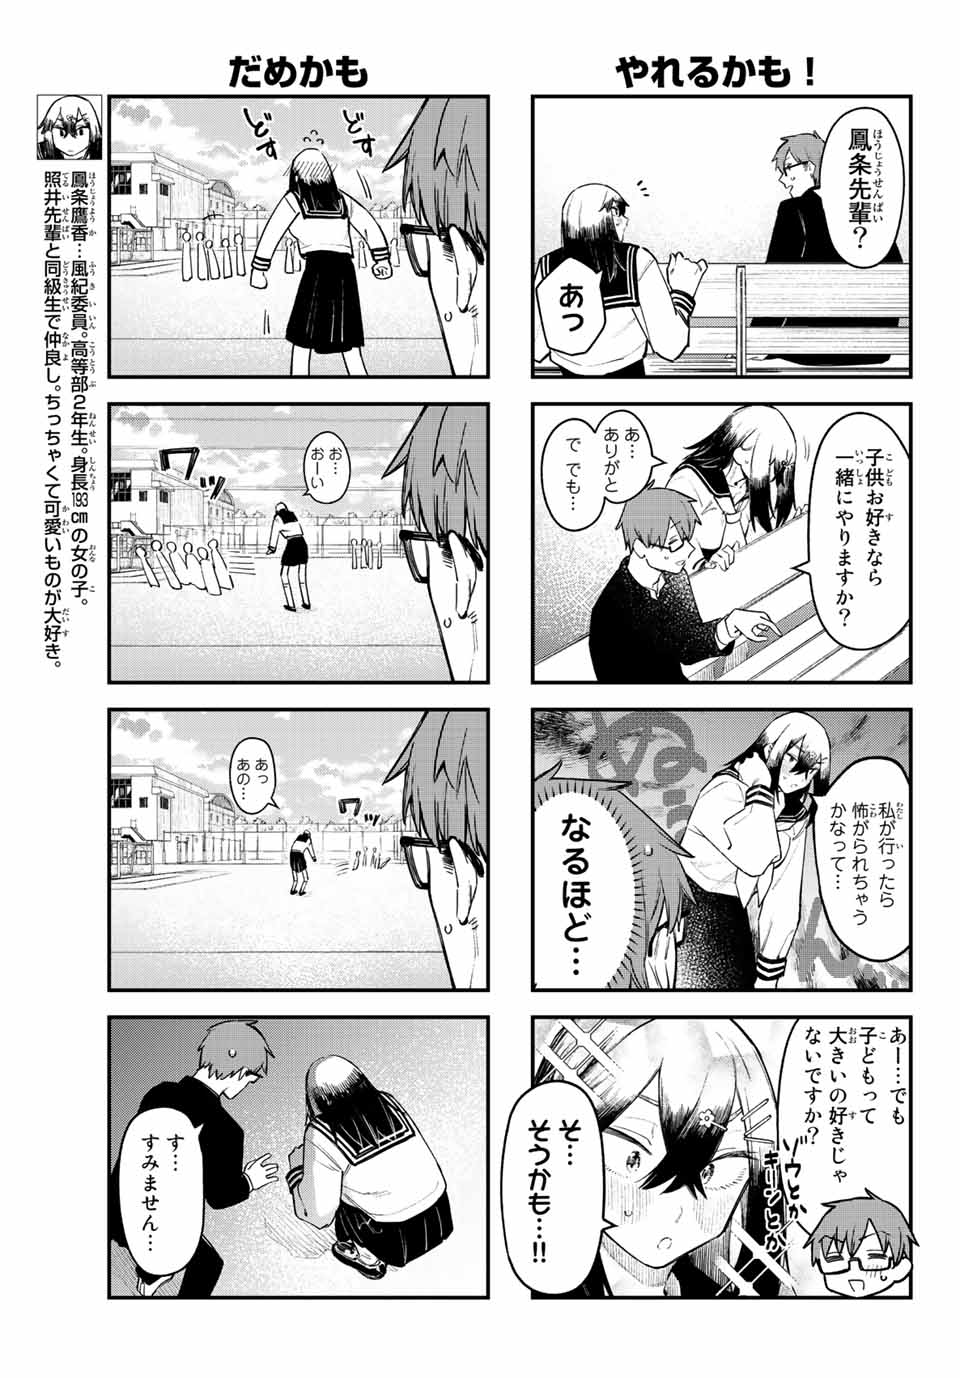 Seitokai mi mo Ana wa Aru! - Chapter 12 - Page 5